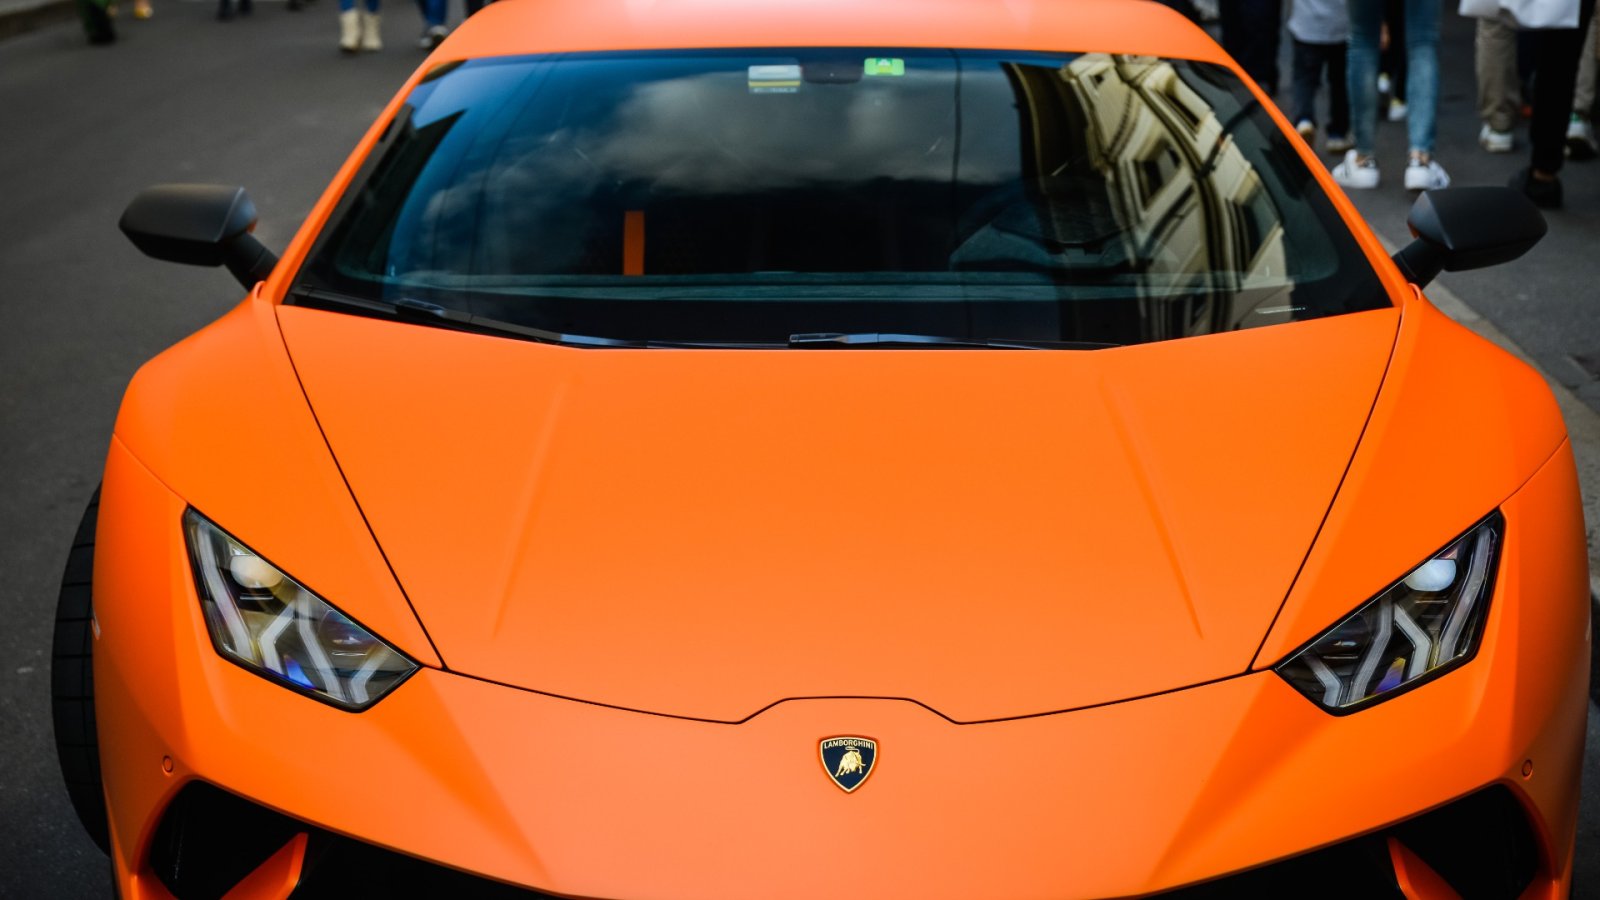 Lamborghini og Technics avduker Supercar-inspirert platespiller med begrenset utgave